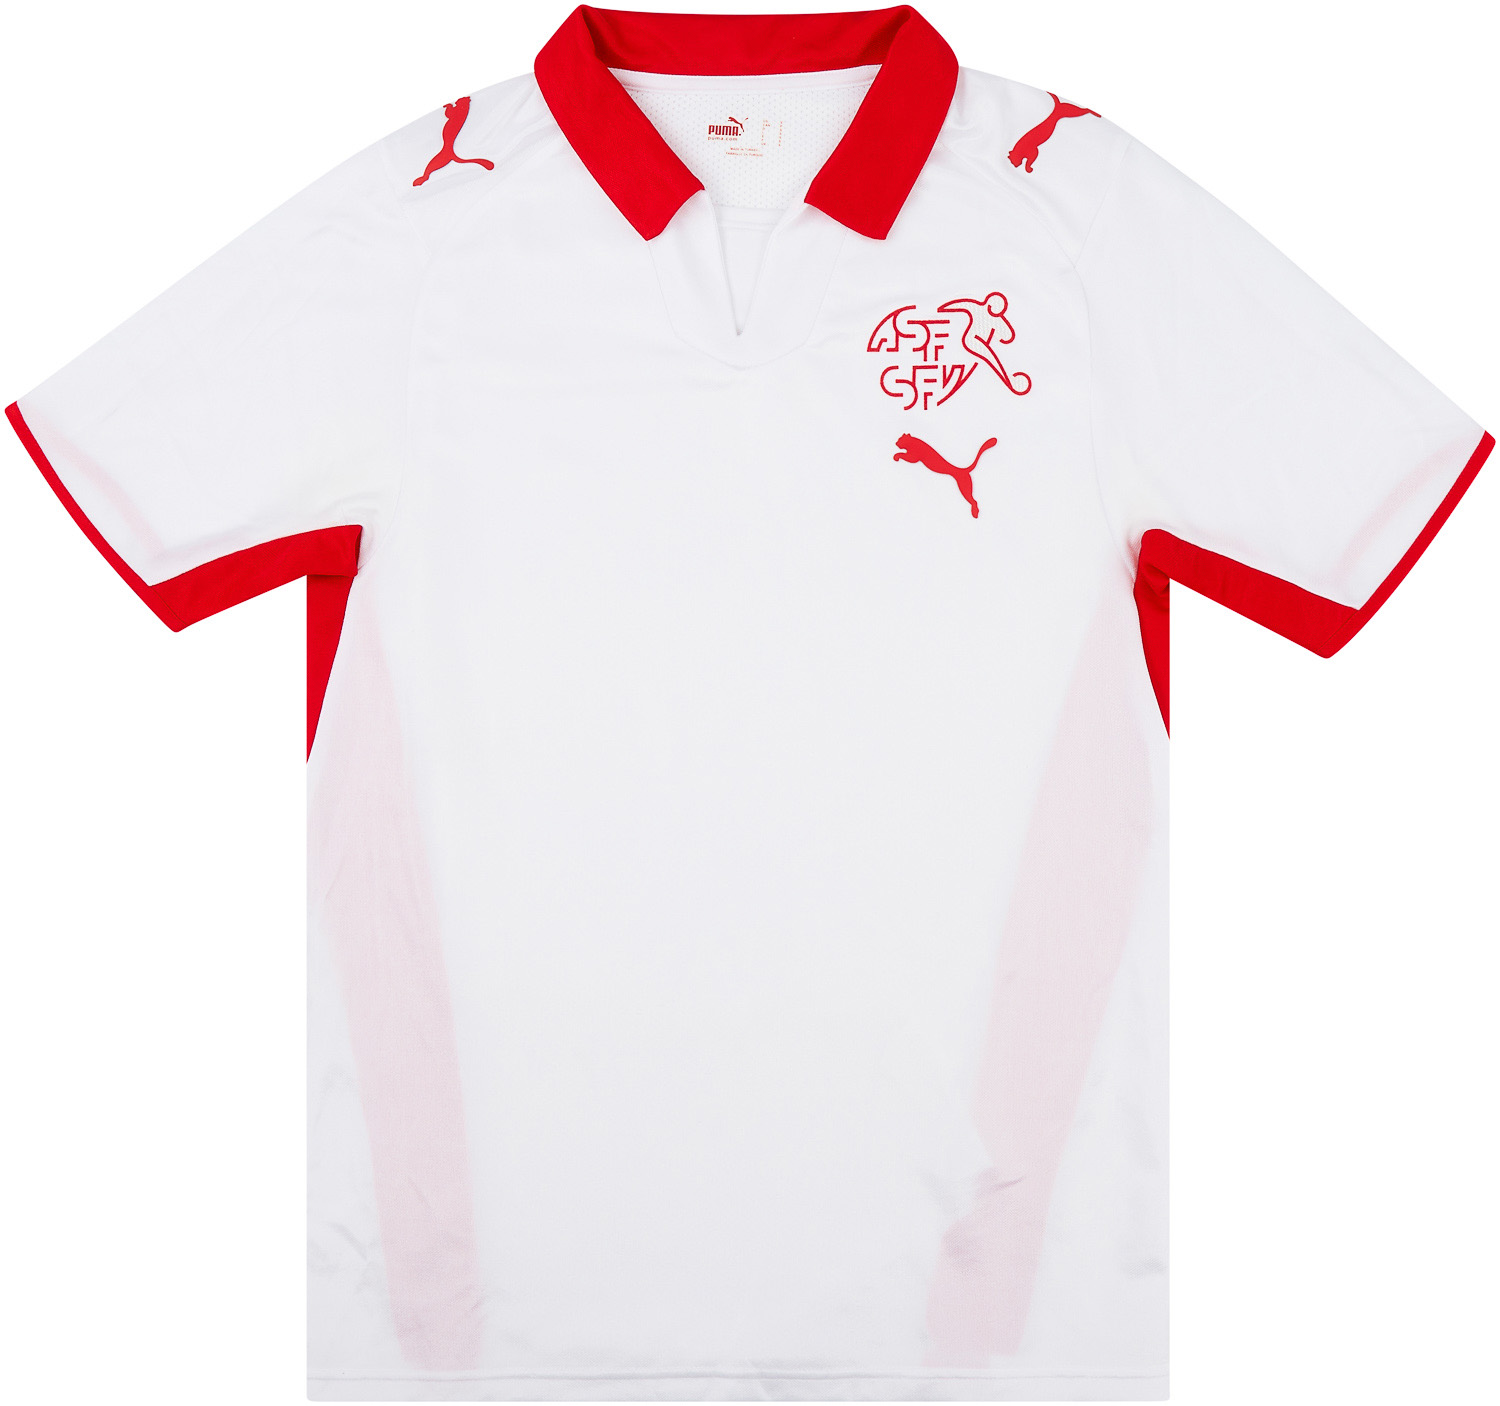 2008-10 Switzerland Away Shirt - 6/10 - ()